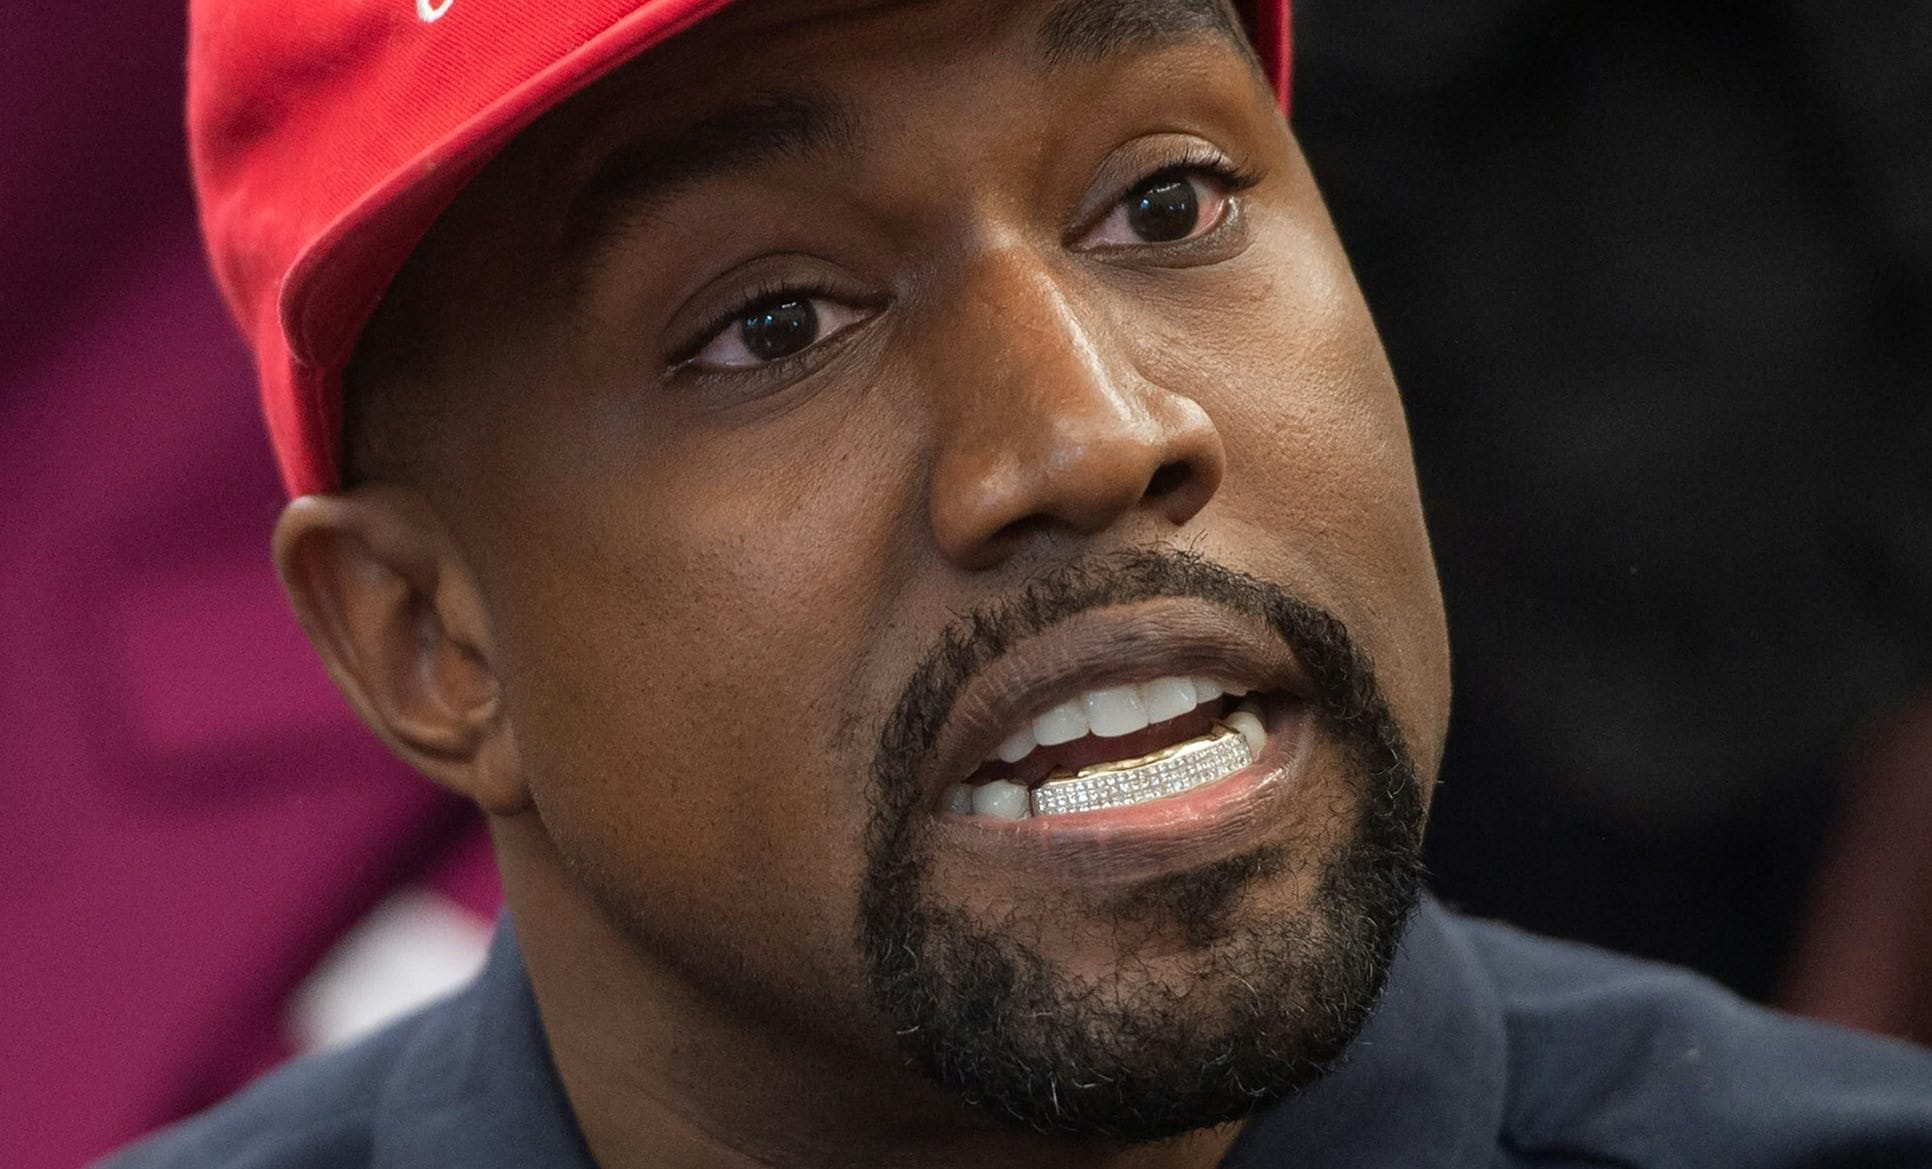 Adidas rompe con Kanye West tras sus comentarios antisemitas